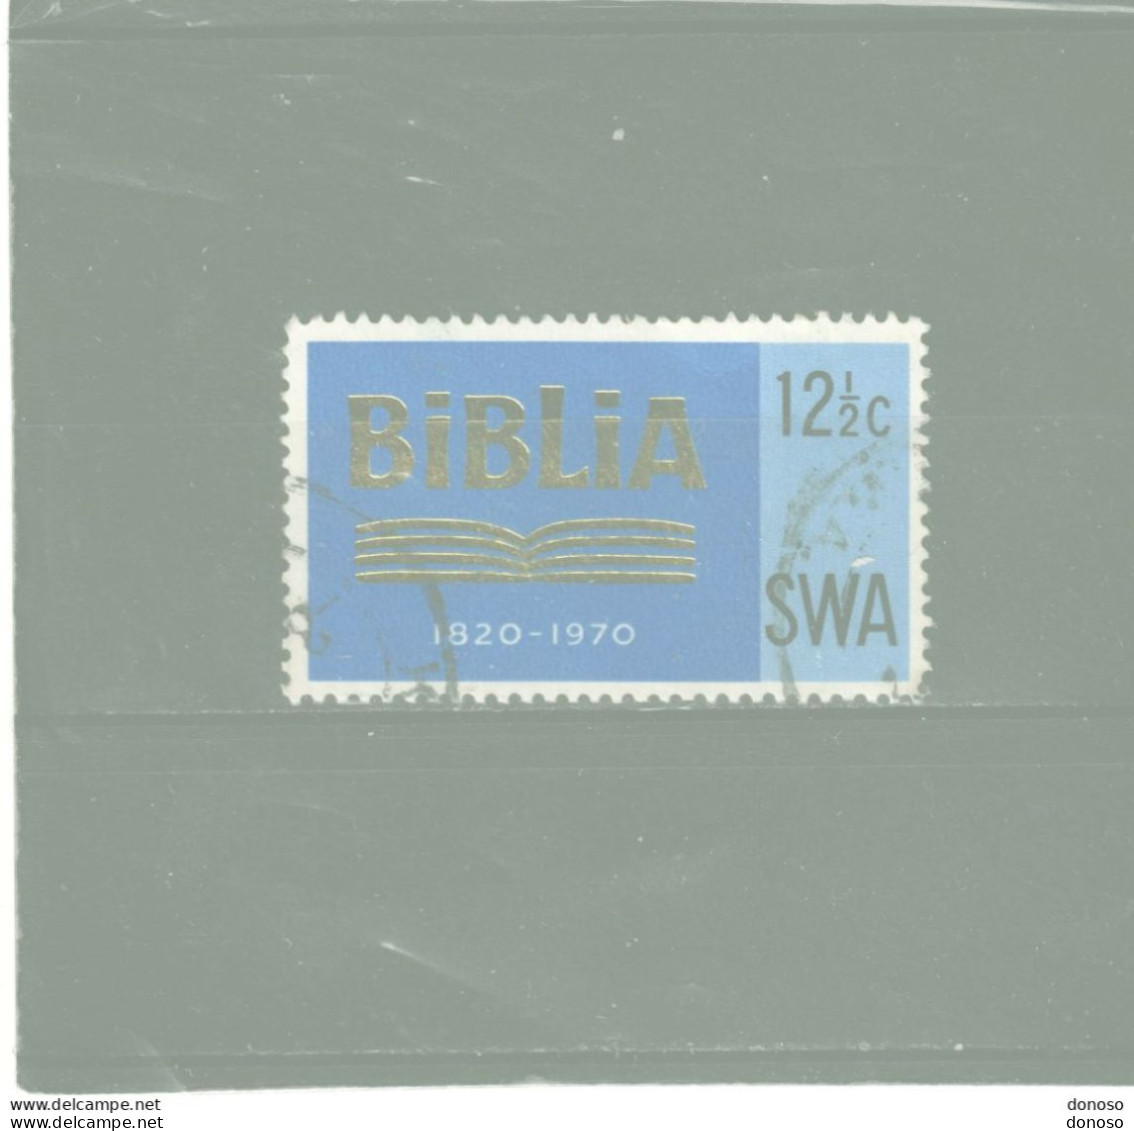 SWA SUD OUEST AFRICAIN 1970 SOCIETE BIBLIQUE Yvert 303, Michel 359  Oblitéré Cote Yv 33 Euros - Afrique Du Sud-Ouest (1923-1990)